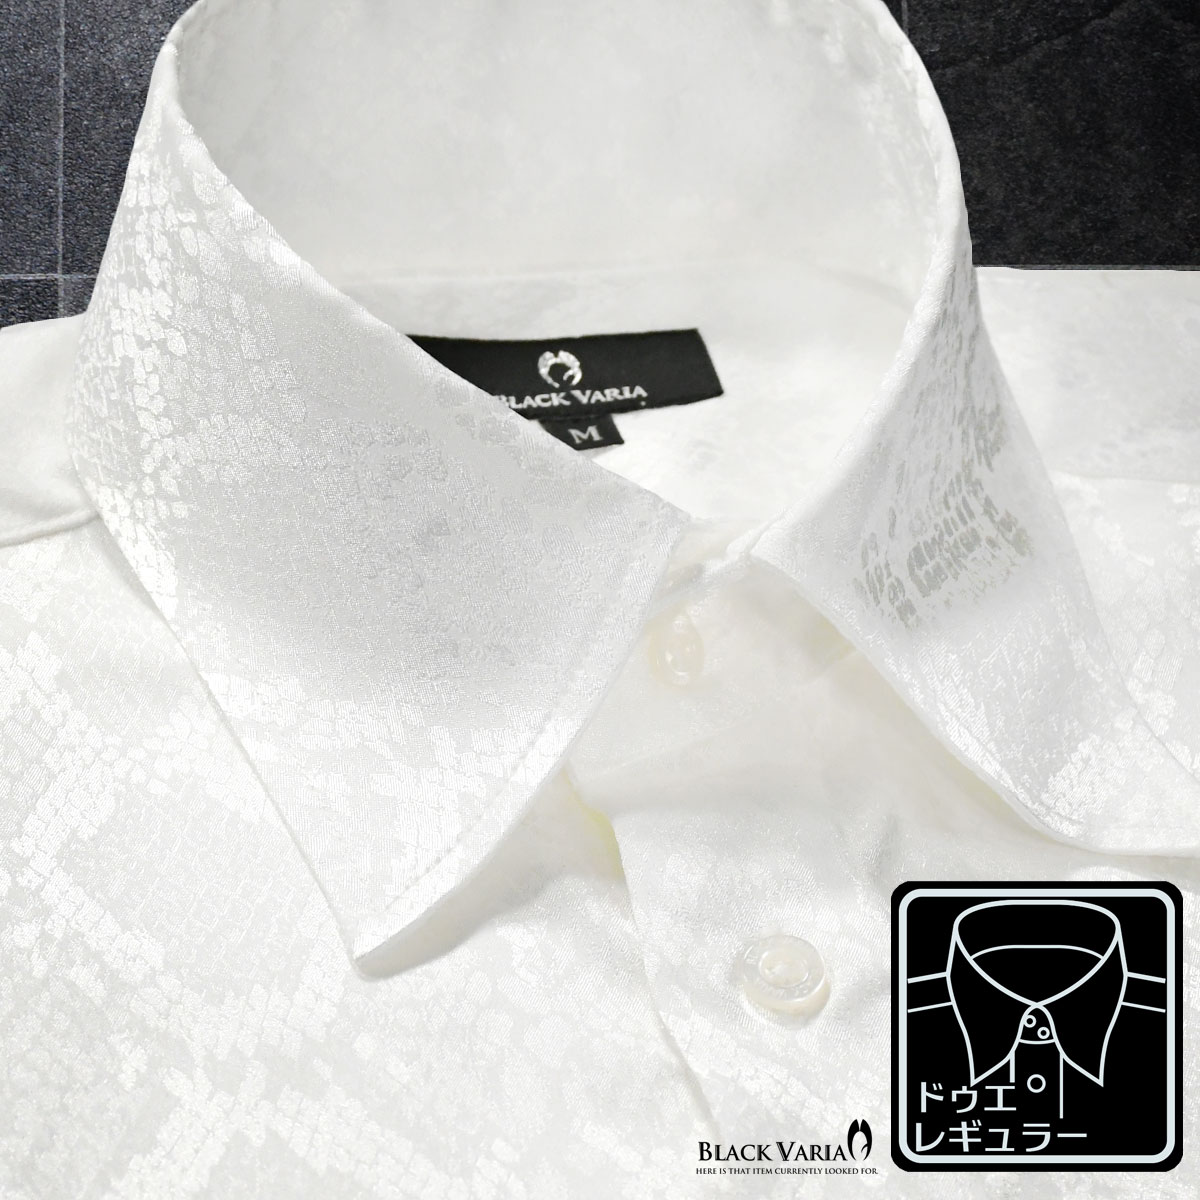 ドゥエボットーニ サテンシャツ ドレスシャツ ドゥエボットーニ パイソン 襟高 蛇 日本製 レギュラーカラー ジャガード パーティー メンズ mens ファッション おしゃれ (ホワイト白) 181711